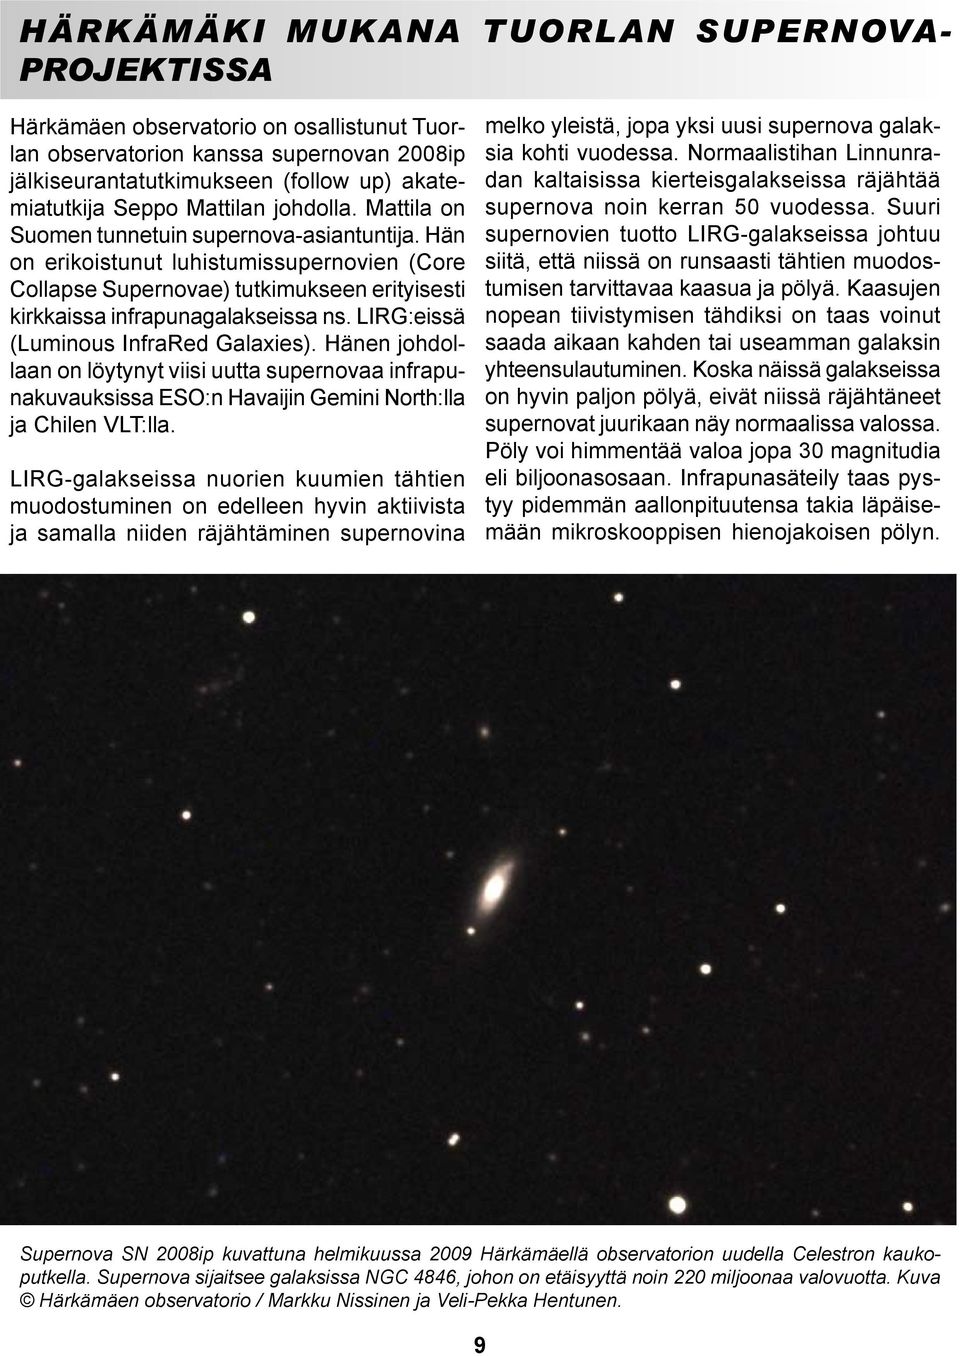 LIRG:eissä (Luminous InfraRed Galaxies). Hänen johdollaan on löytynyt viisi uutta supernovaa infrapunakuvauksissa ESO:n Havaijin Gemini North:lla ja Chilen VLT:lla.